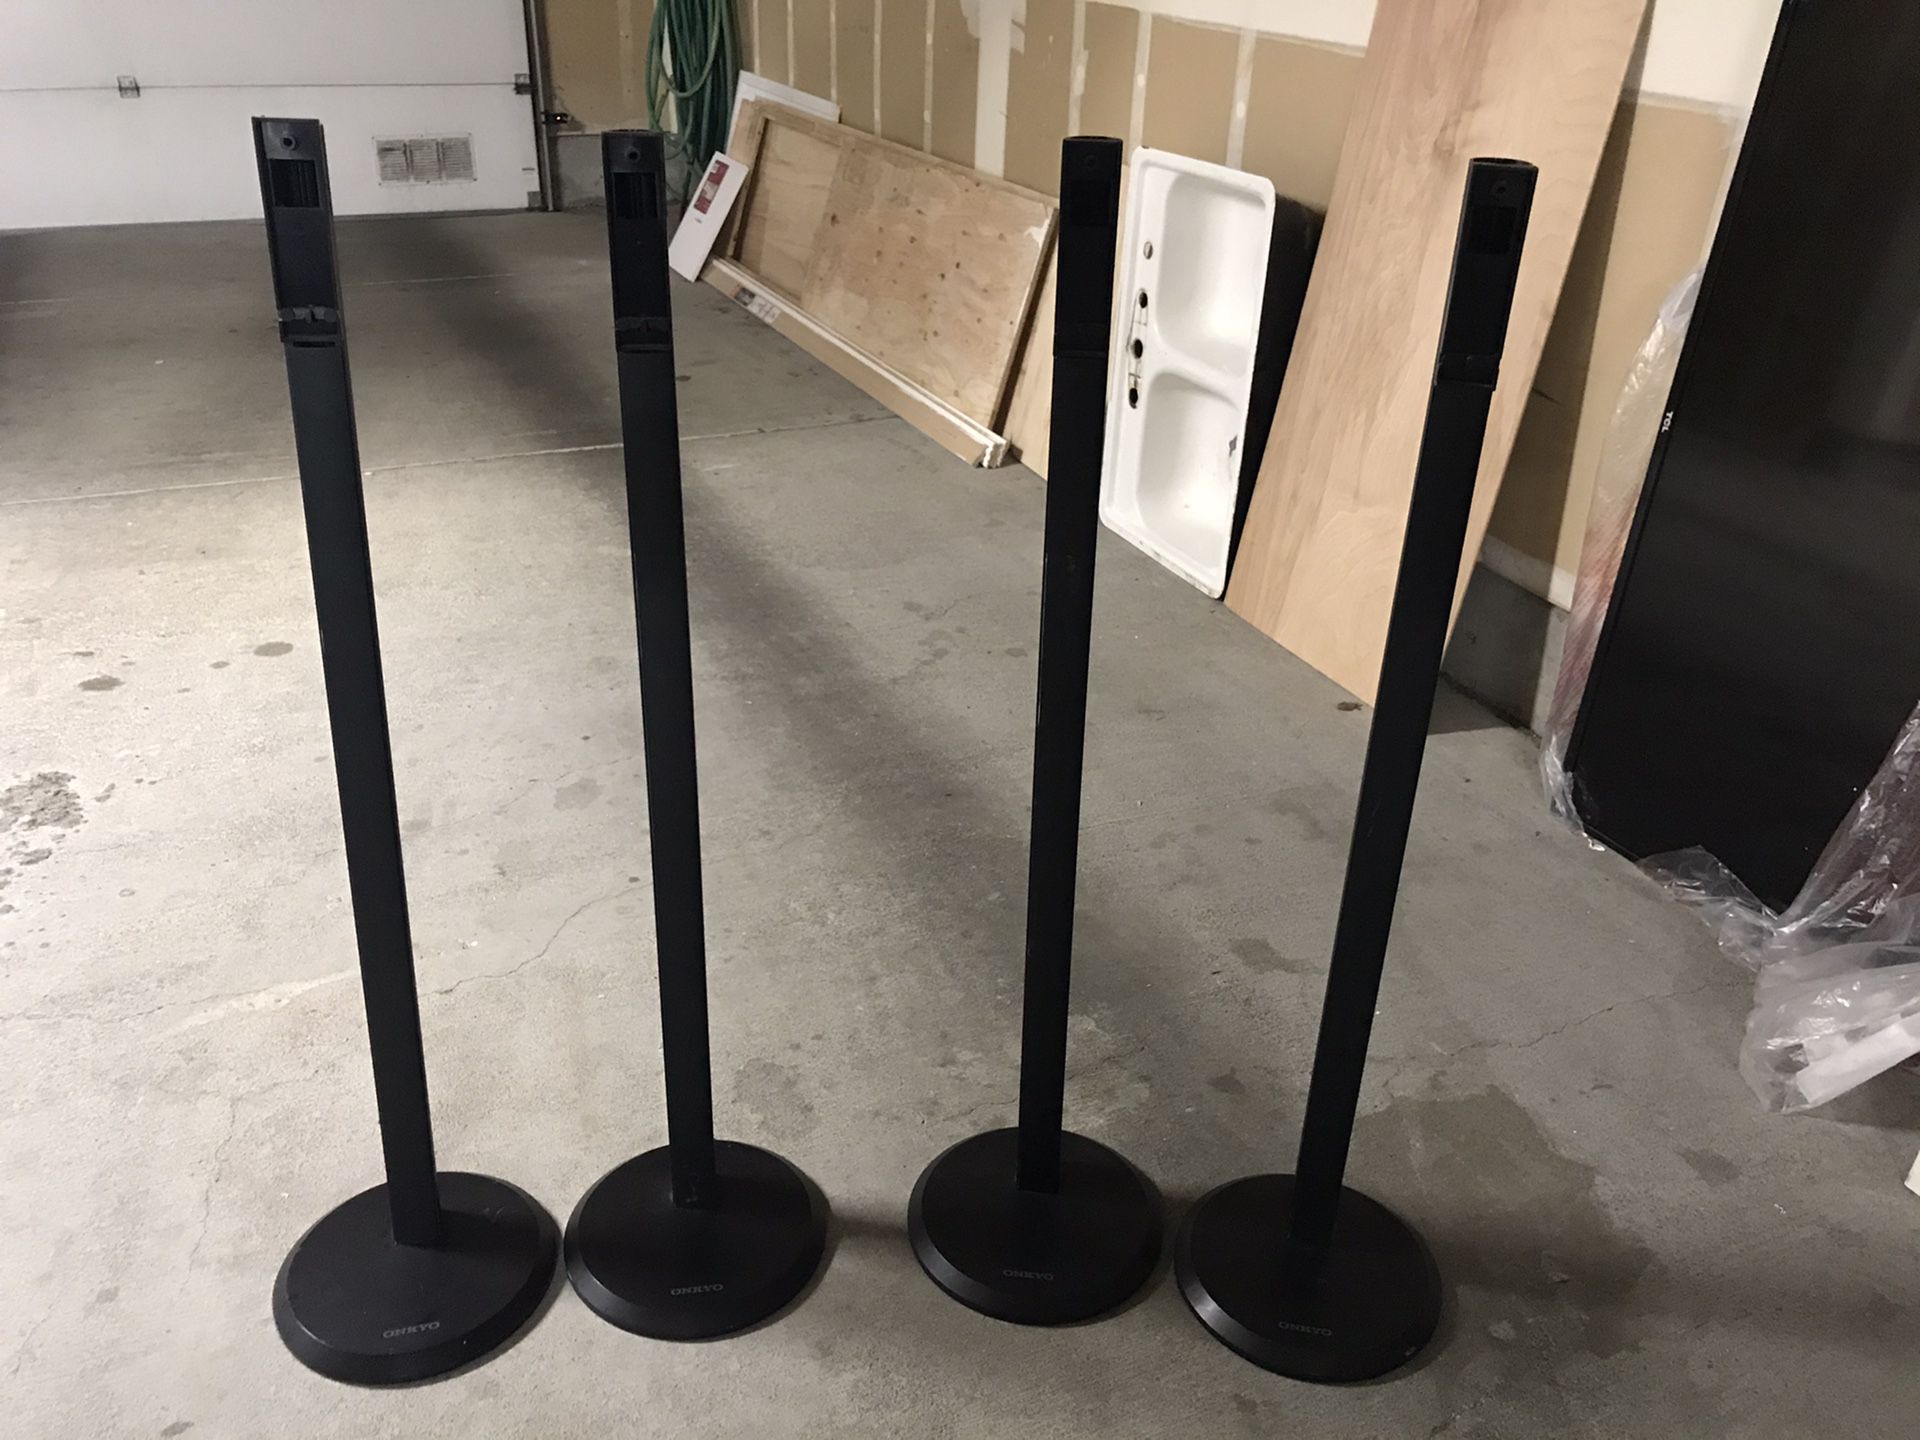 4 onkyo speaker stands